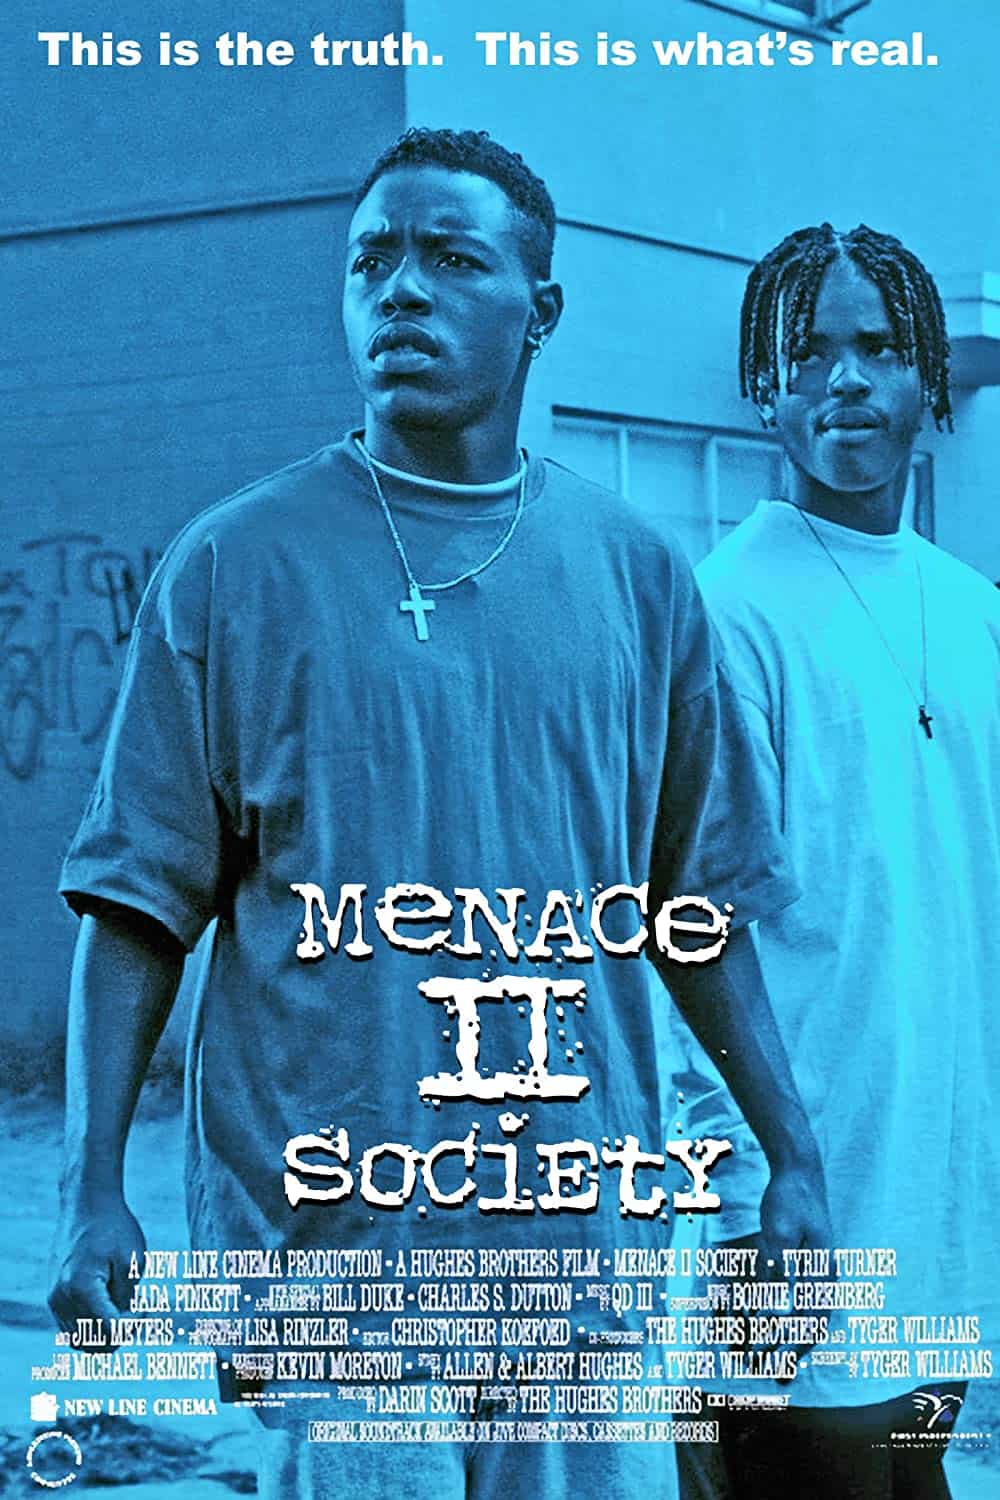 Menace 11 society(1993)